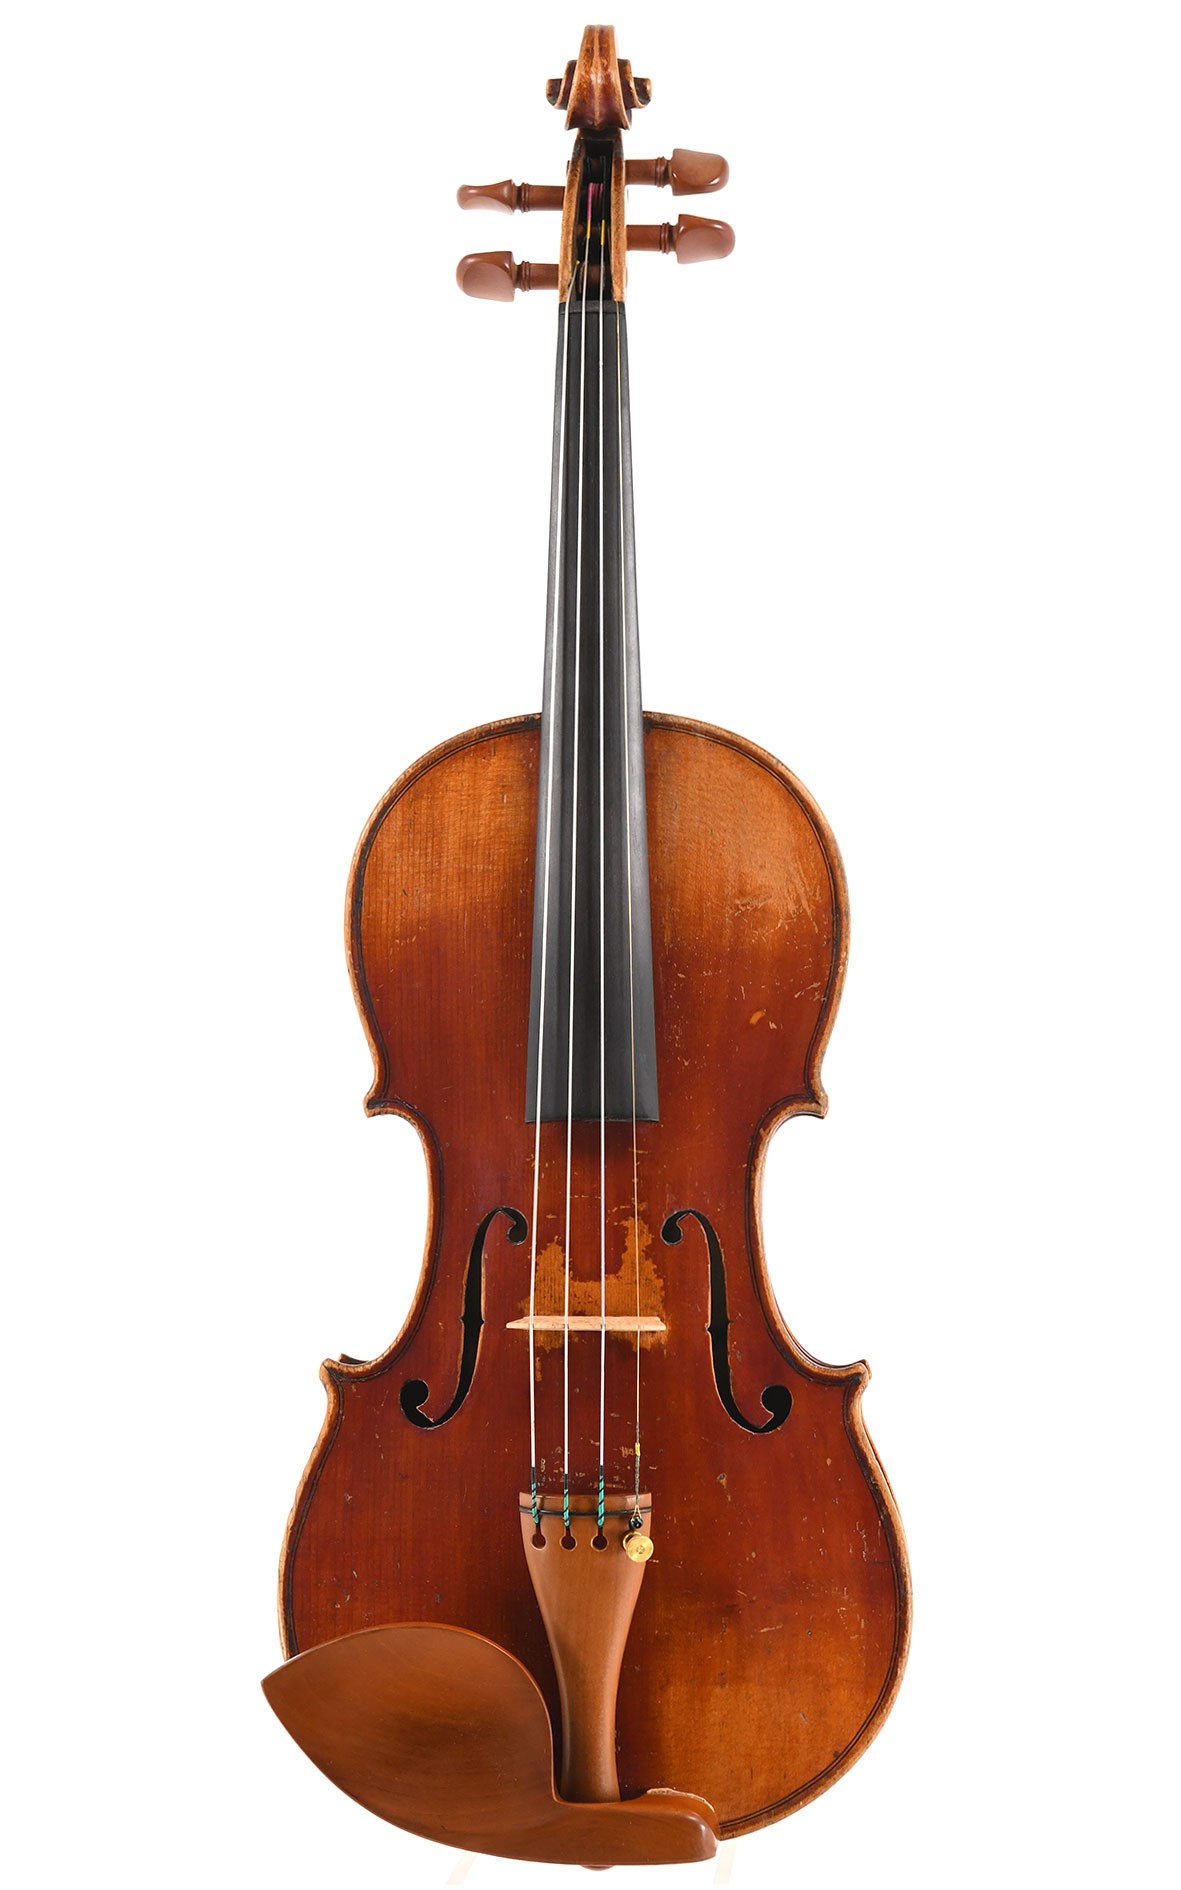 Antique Neuner & Hornsteiner 3/4 violin made in 1882